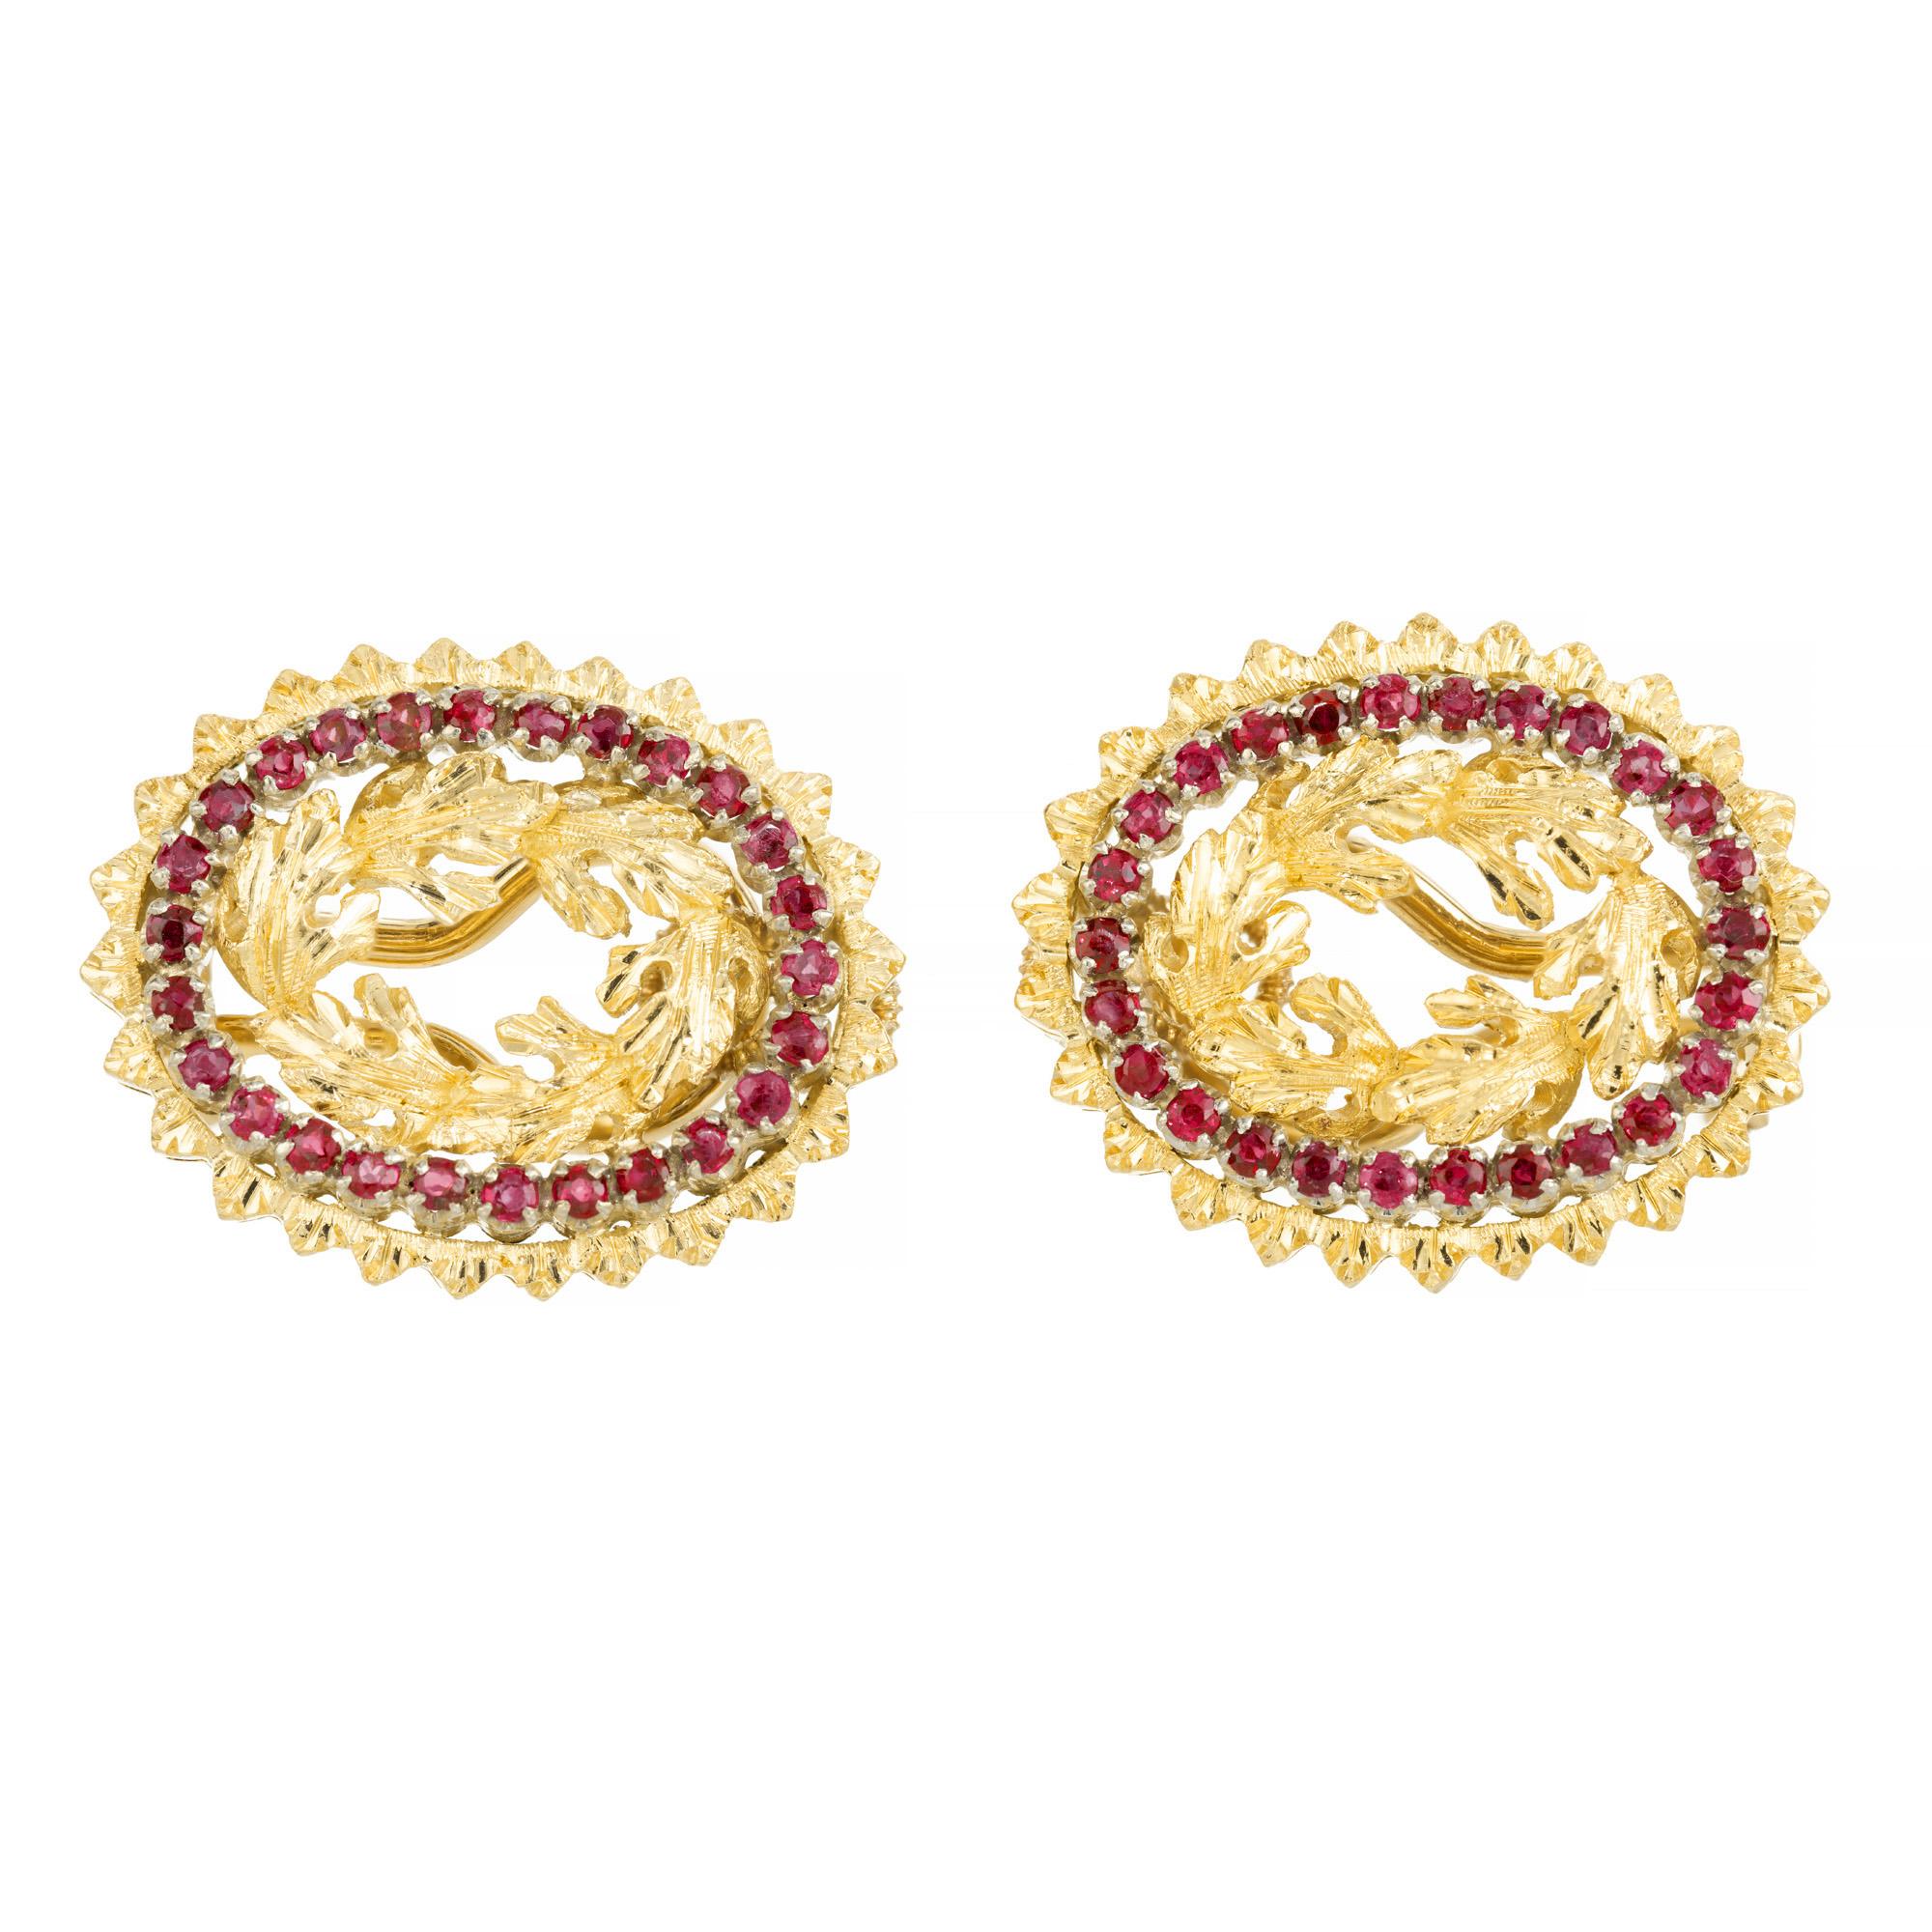  .70 Carat Rubin Gelbgold Lever Back Ohrringe, ein wahres Zeugnis von Schönheit und Eleganz. Jeder Ohrring ist mit 26 runden roten Rubinen verziert und wurde mit viel Liebe zum Detail gefertigt. In der Mitte befinden sich hochdetaillierte,